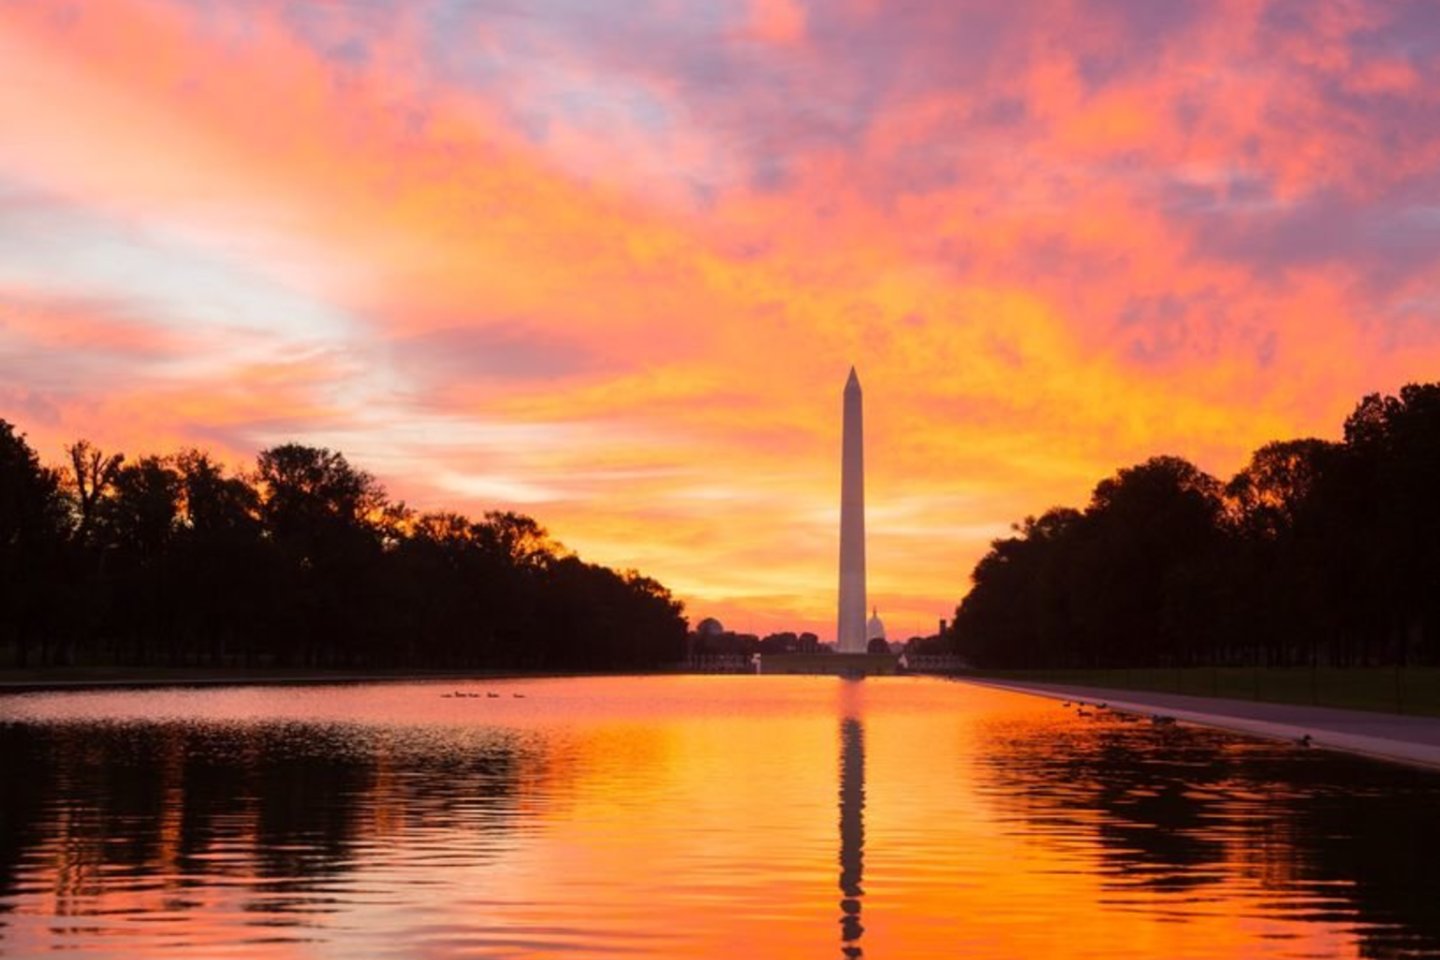 1885 m. JAV pirmojo prezidento George’o Washingtono gimtadienio išvakarėse Vašingtone pašventintas jo garbei pastatytas Washingtono monumentas.<br>123rf